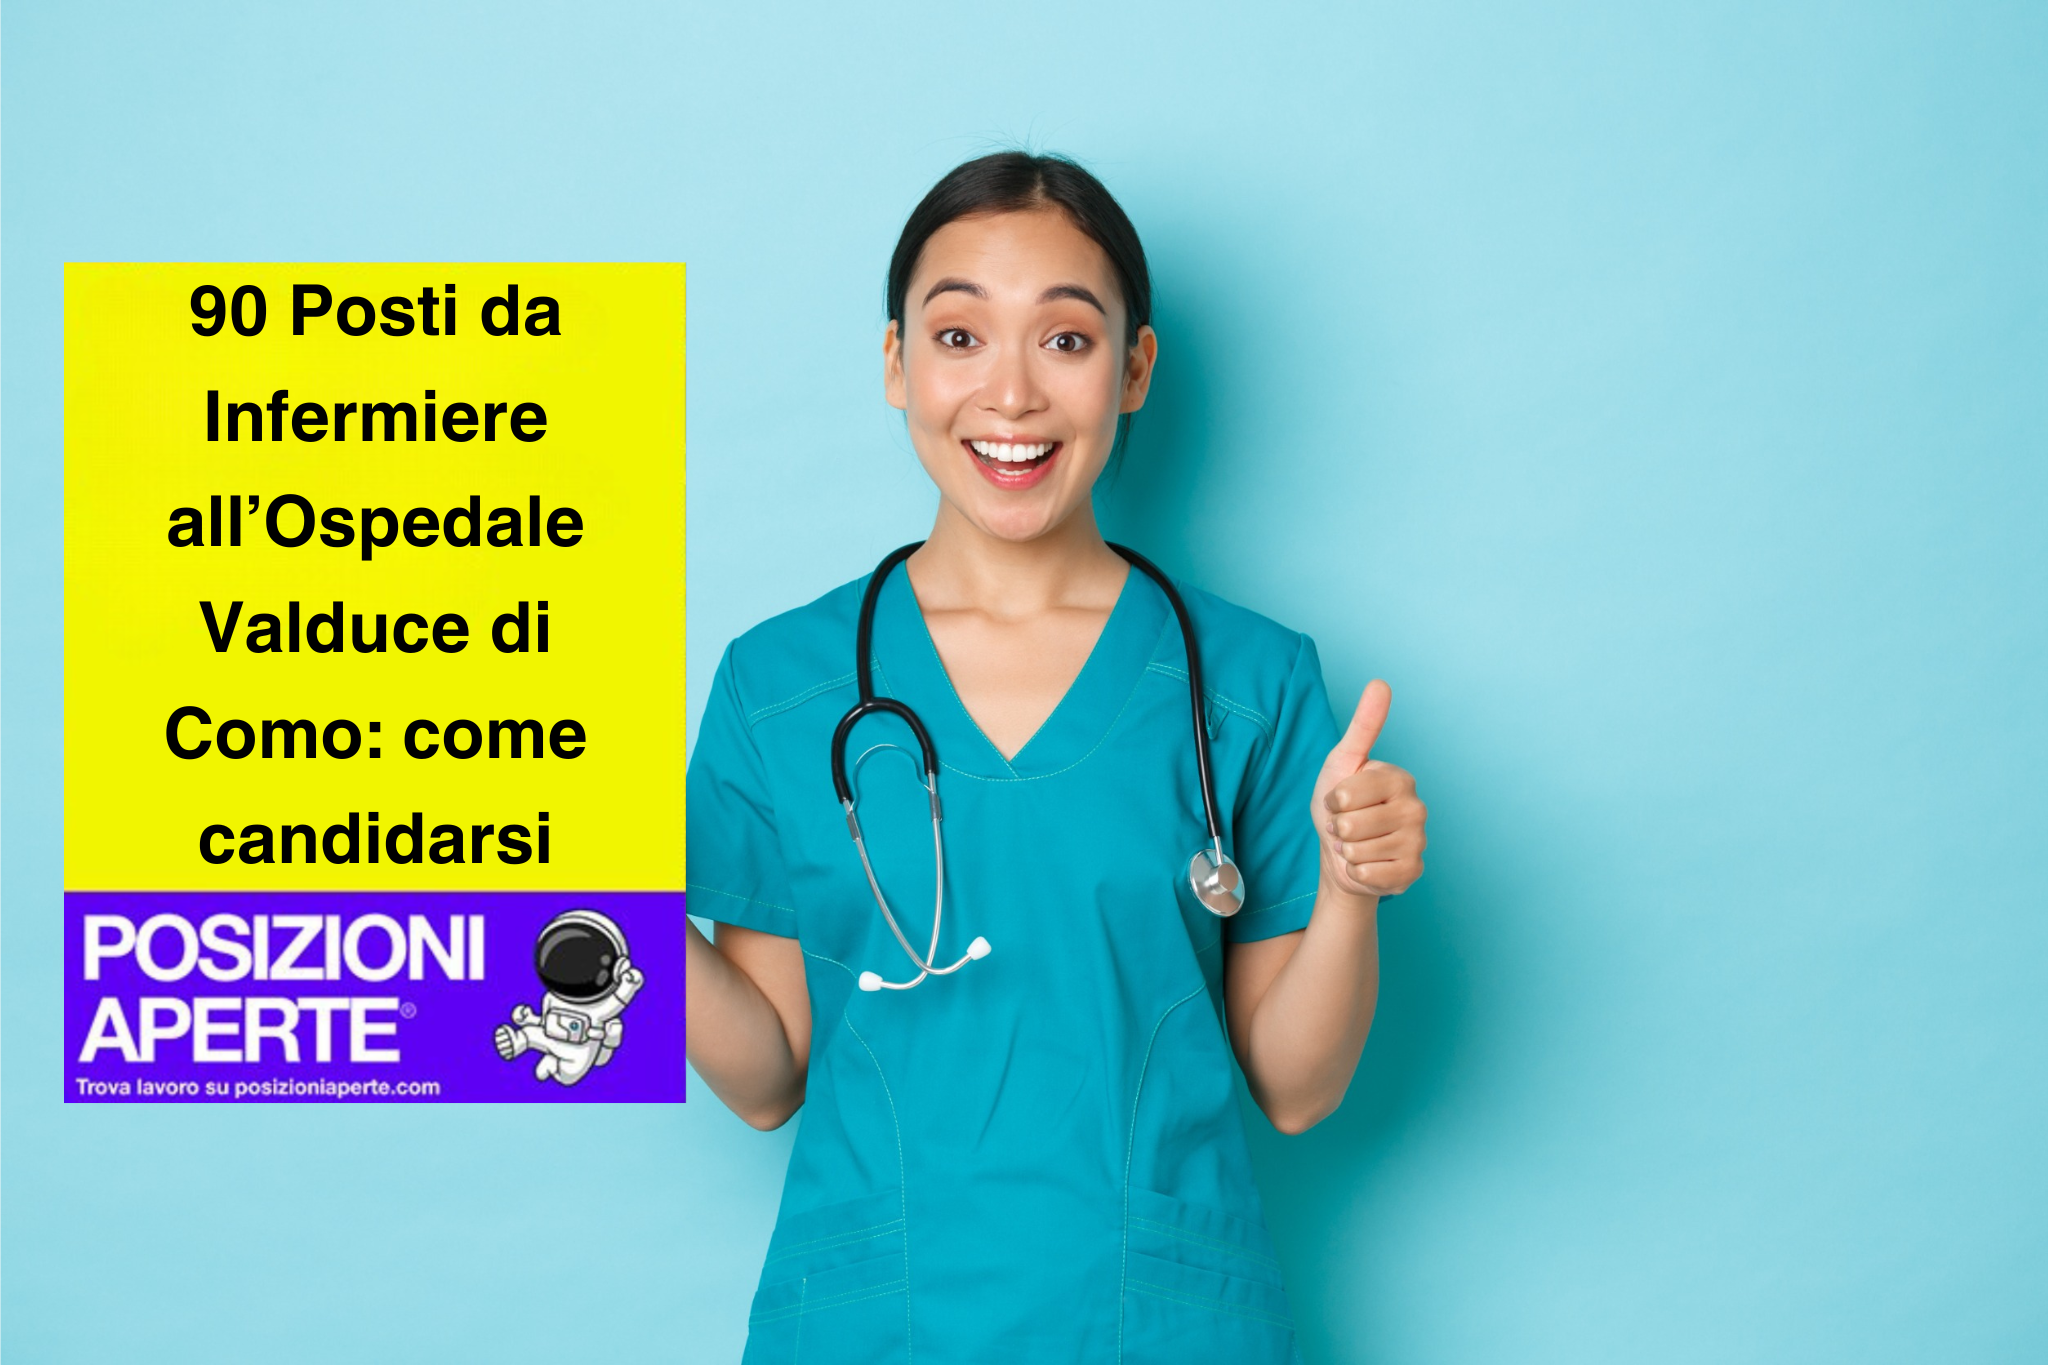 90 Posti da Infermiere all’Ospedale Valduce di Como: come Candidarsi